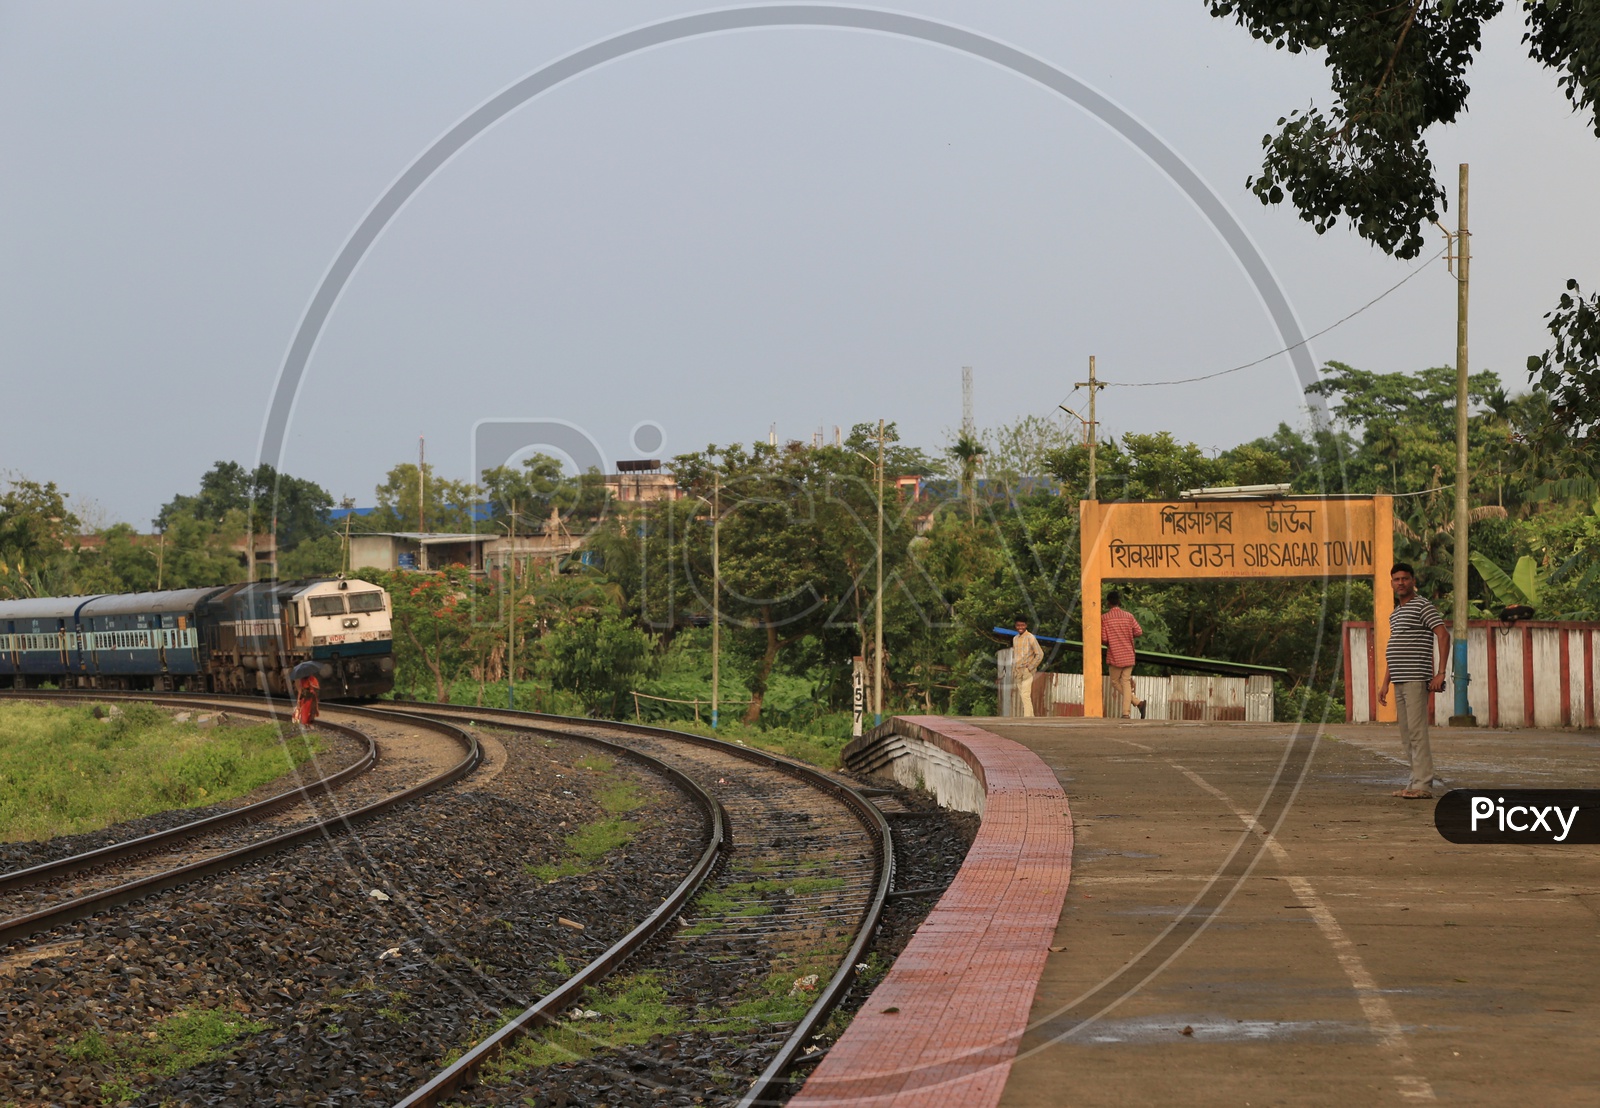 Railway station in Sibsagar, Assam.